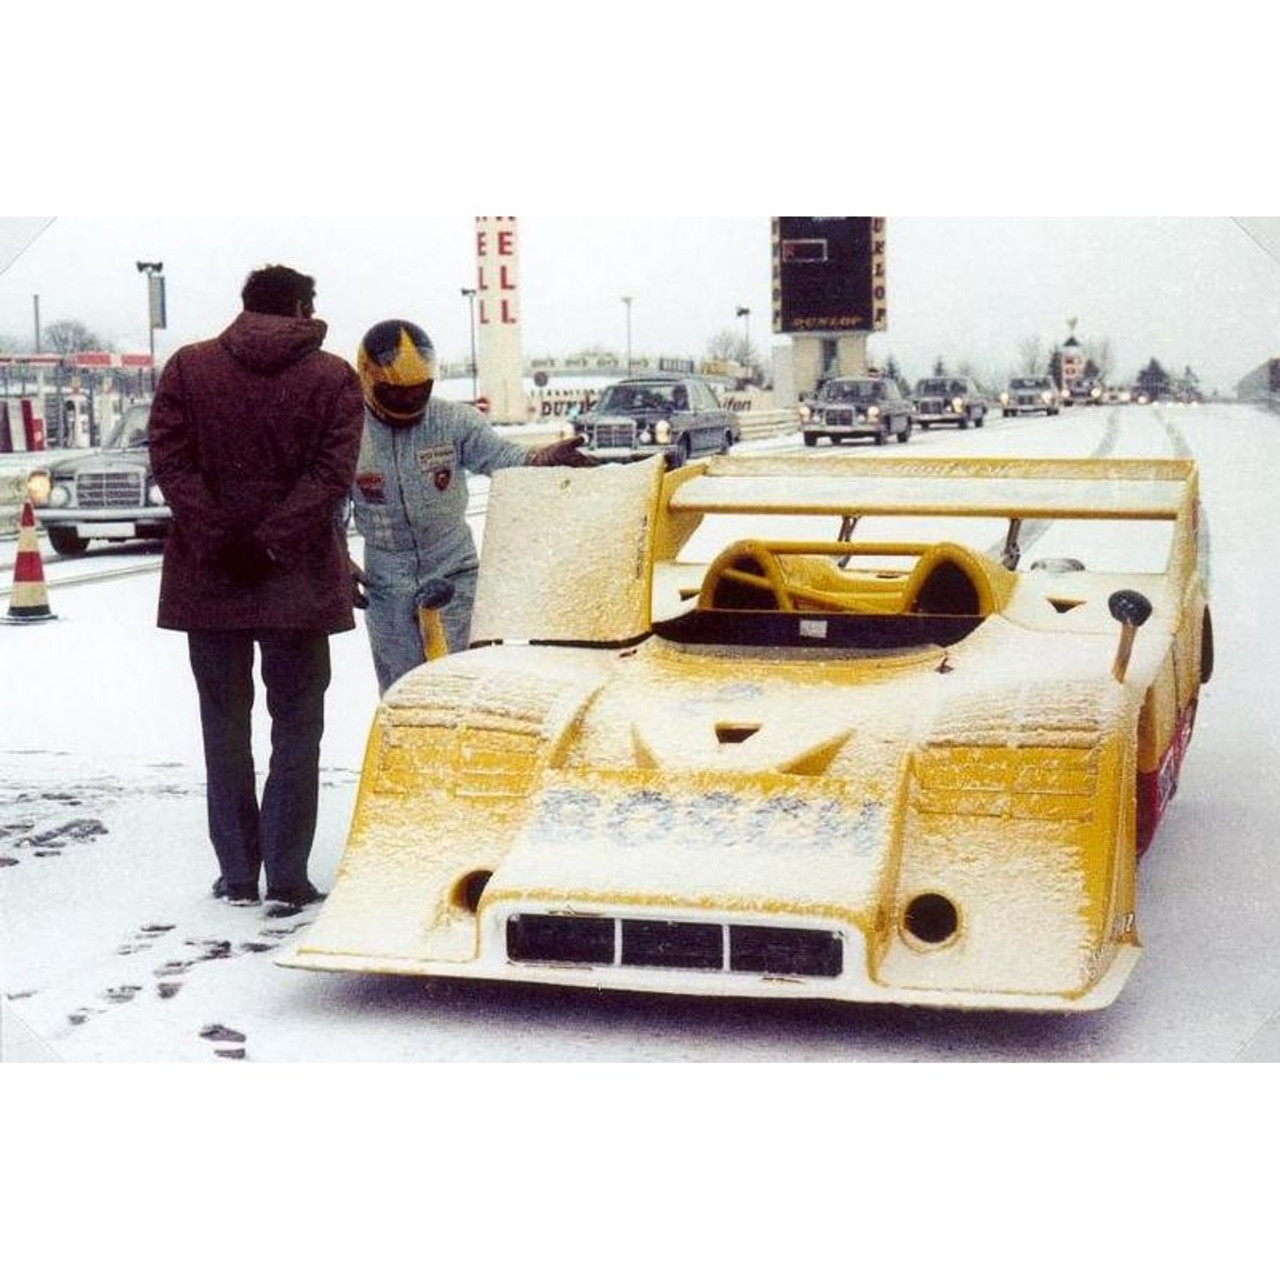 1/18 Minichamps 1973 Porsche 917/10 #2 Farewell in the Snow Nürburgring Willi Kauhsen, Dr. Heinemann Diecast Car Model